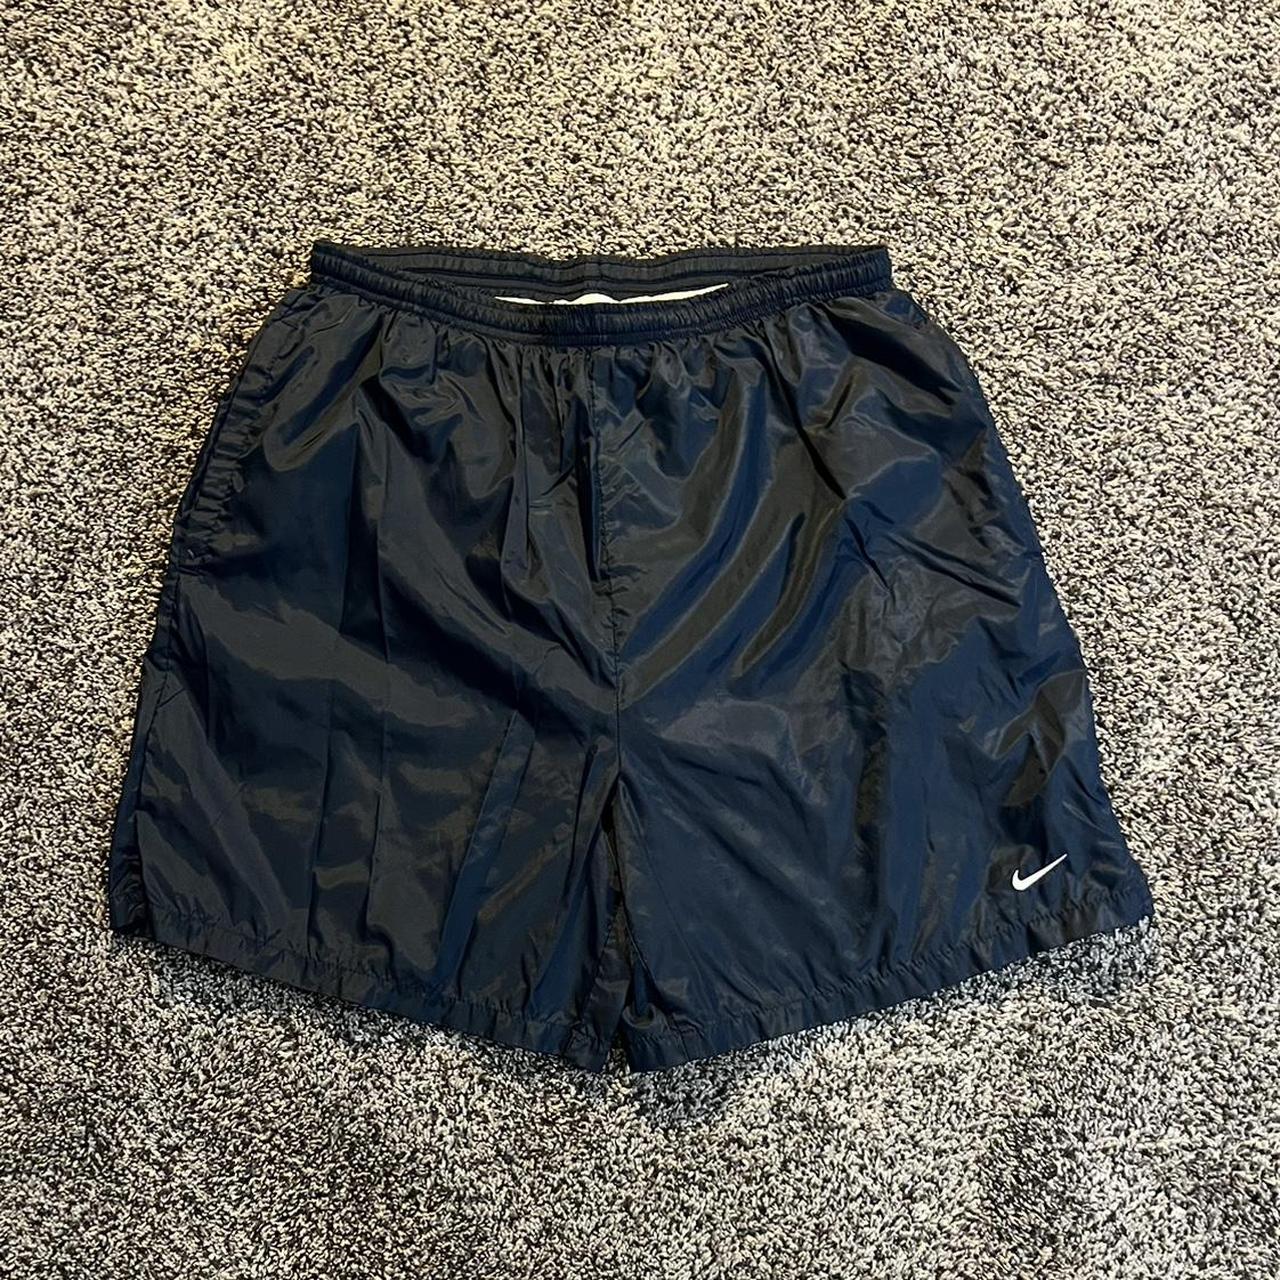 Vintage grey tag nylon Nike short / swim short, size... - Depop